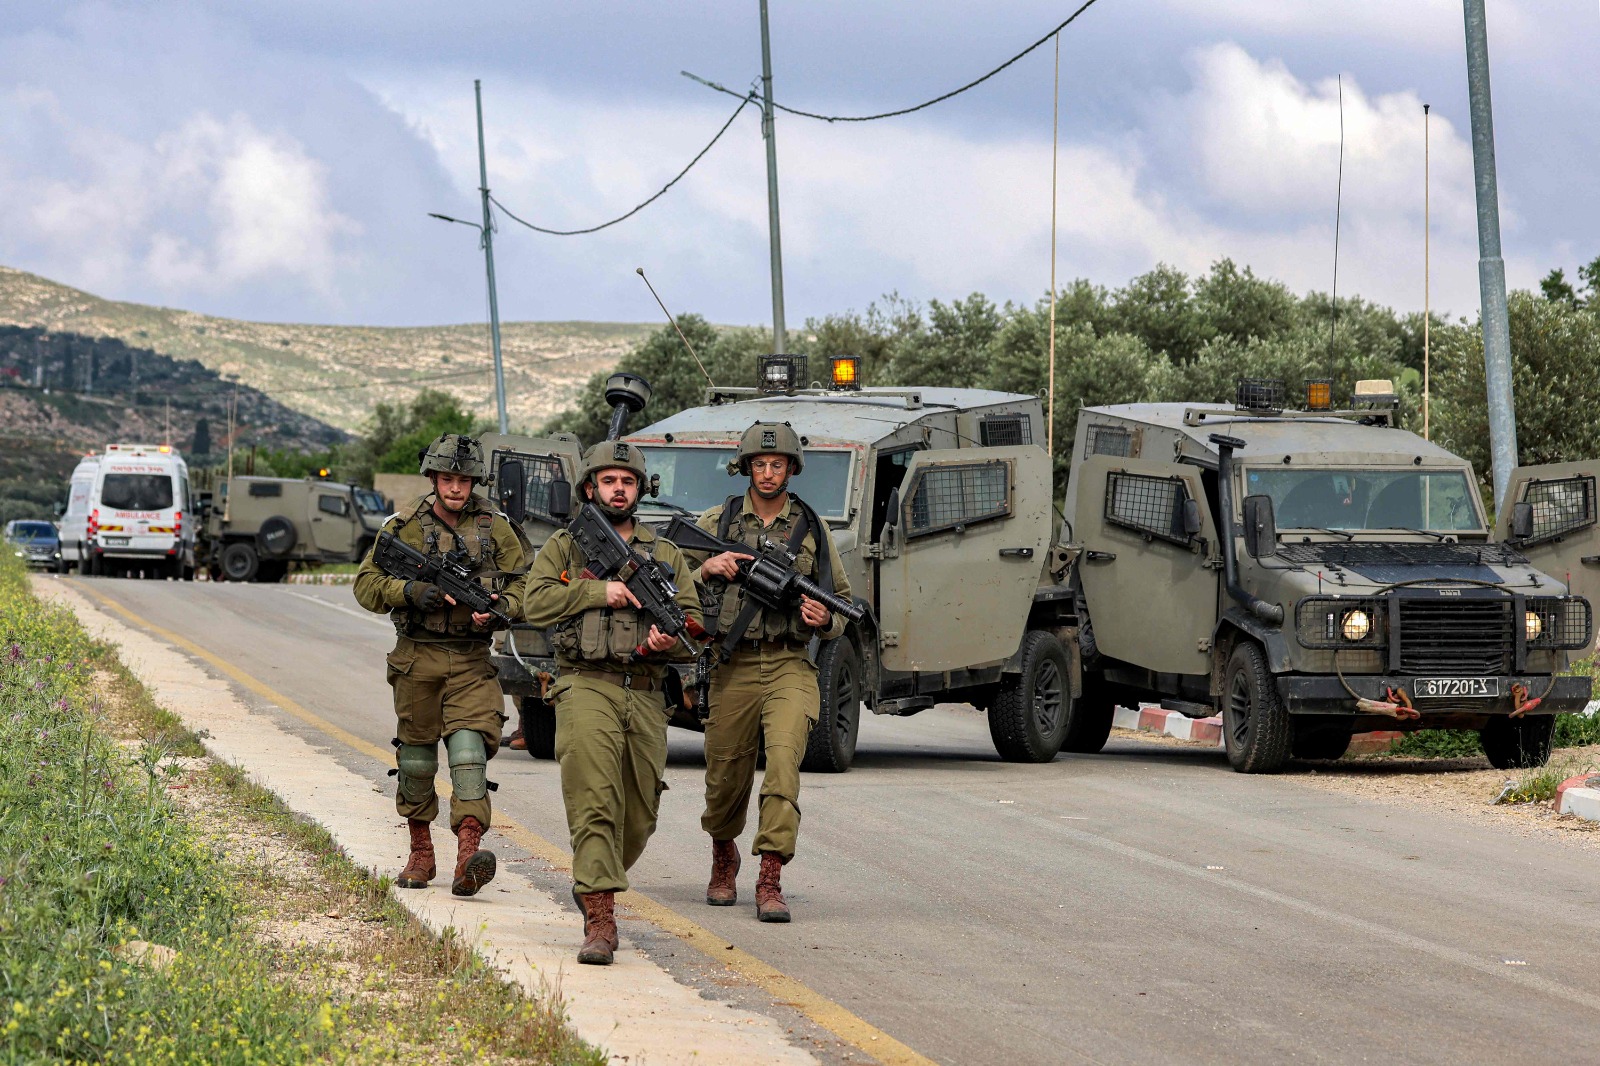 جيش الاحتلال يدفع بتعزيزات عسكرية جديدة للضفة الغربية